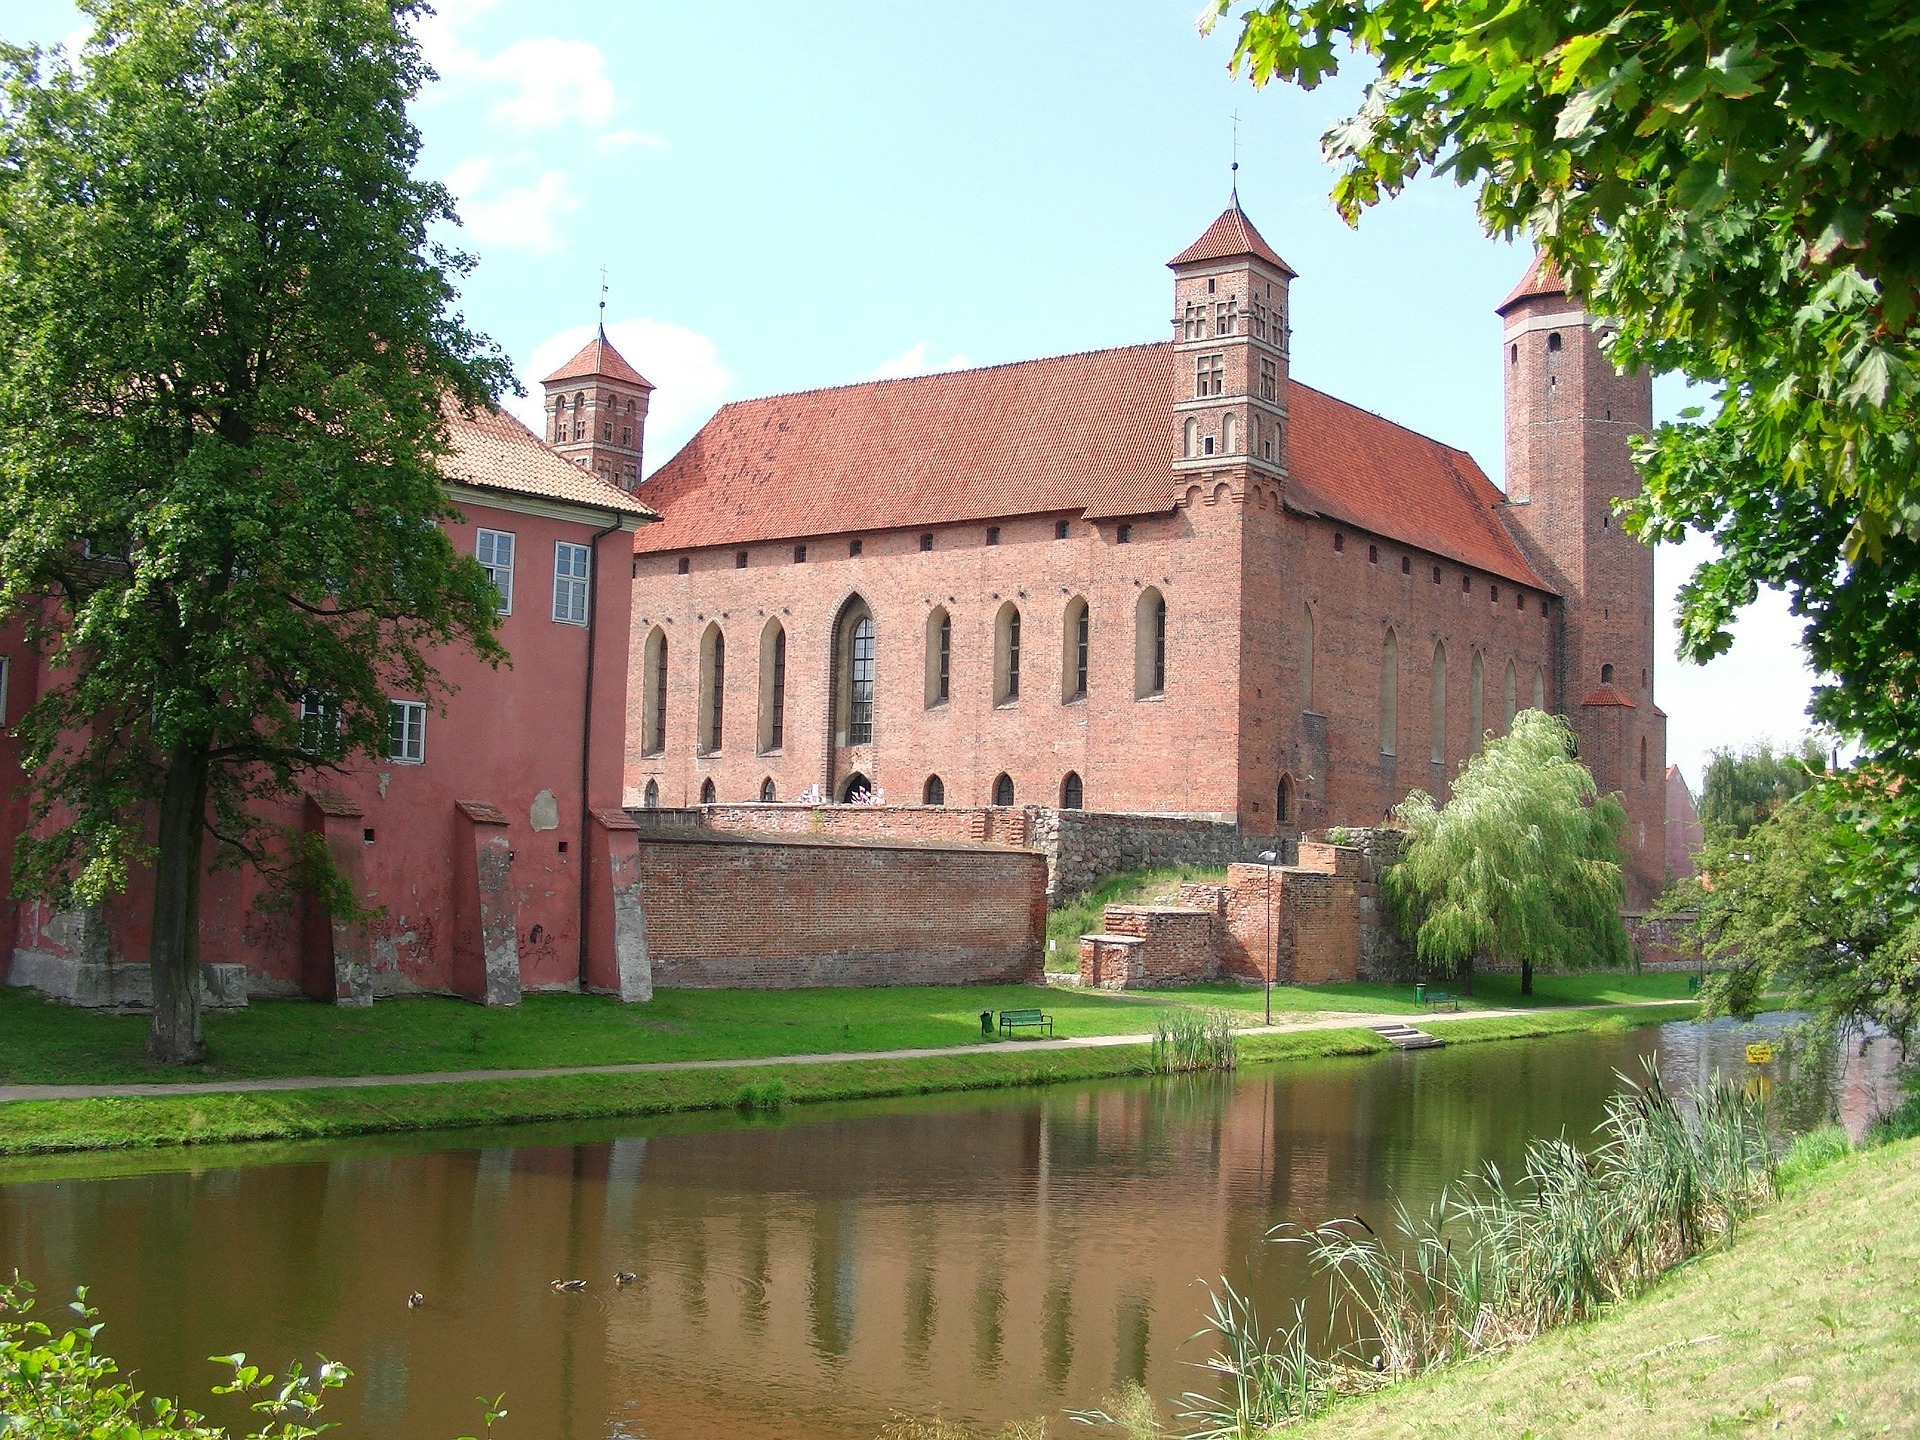 Et stort slott i rød murstein, med fire tårn og spir, beliggende ved en elv med grønne plener og trær foran.